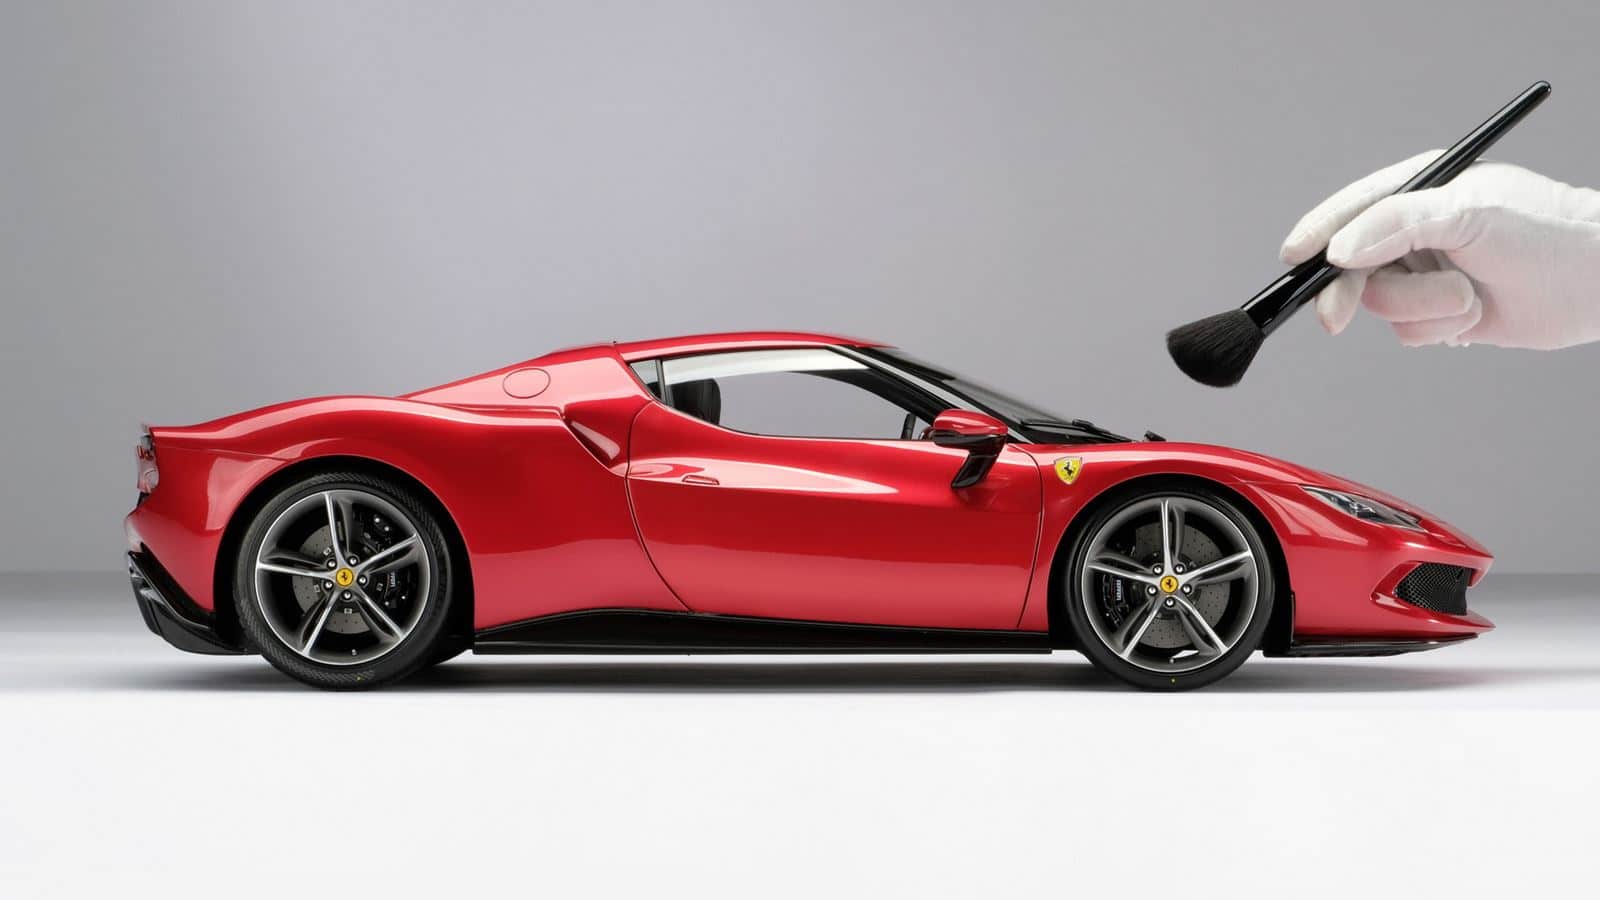 This Ferrari 296 GTB at Amalgam scale costs 12,000 euros